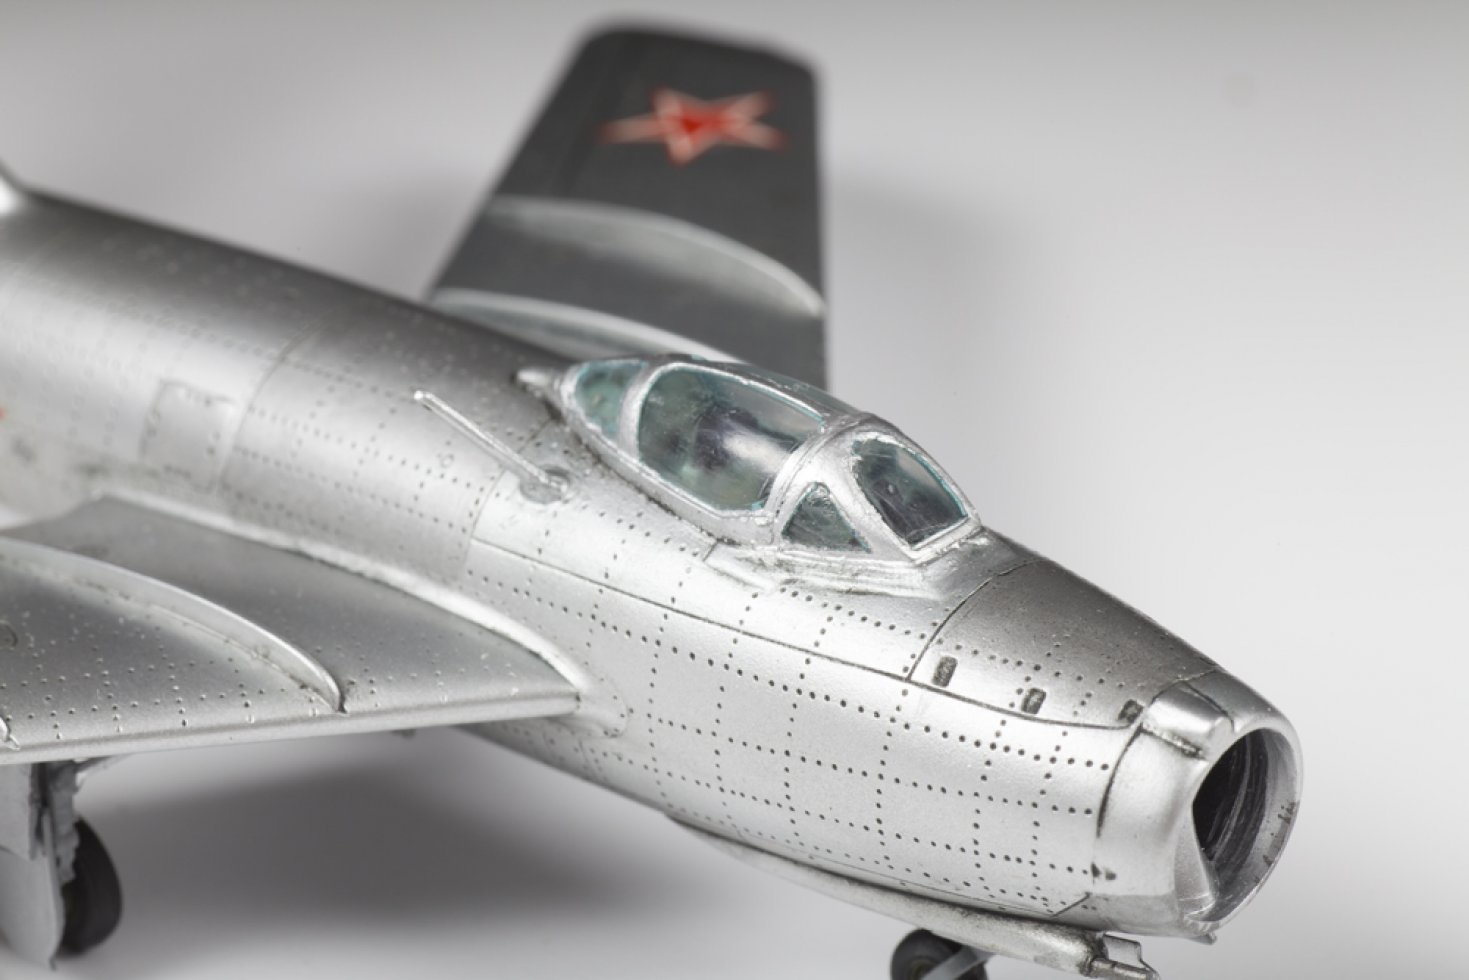 Сборная модель Советский истребитель МиГ-15, производитель «Звезда», масштаб 1:72, артикул 7317 # 4 hobbyplus.ru